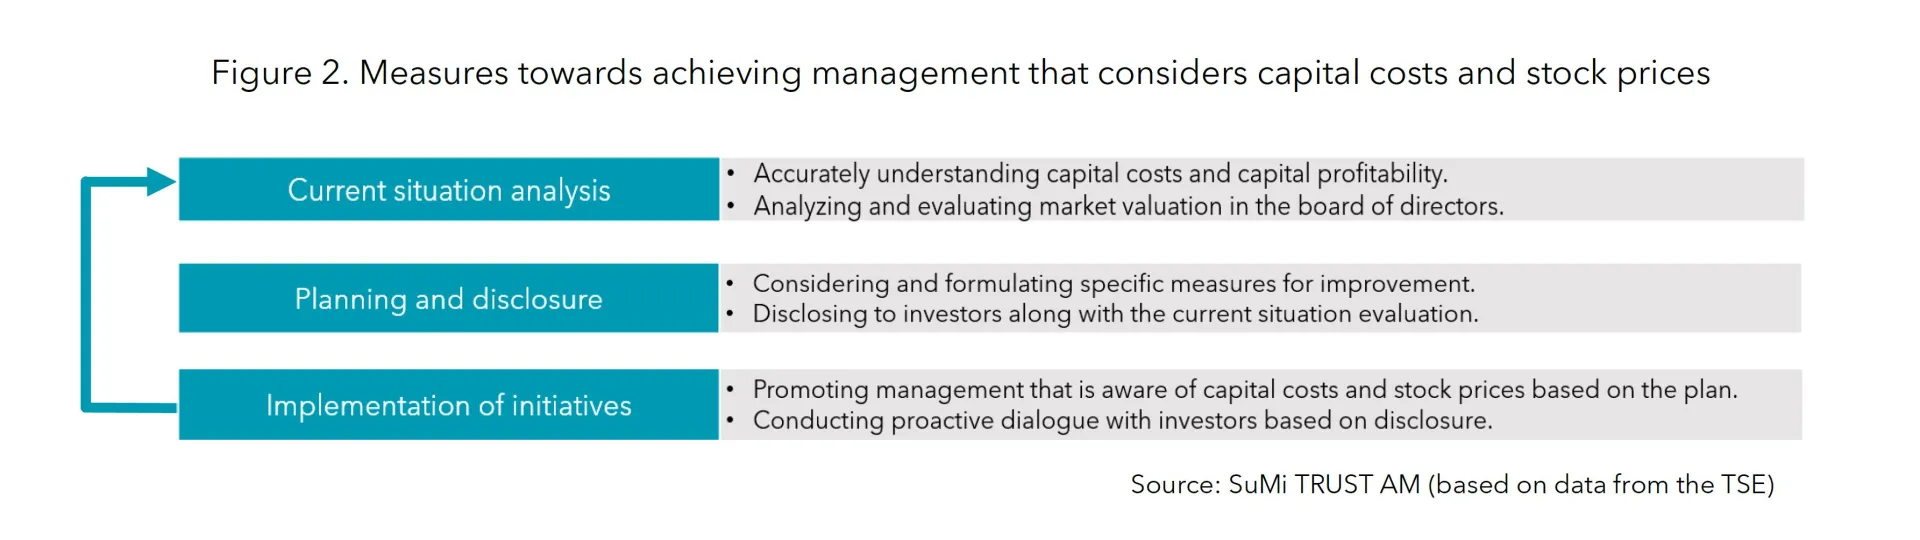 Figure 2 Measures towards management